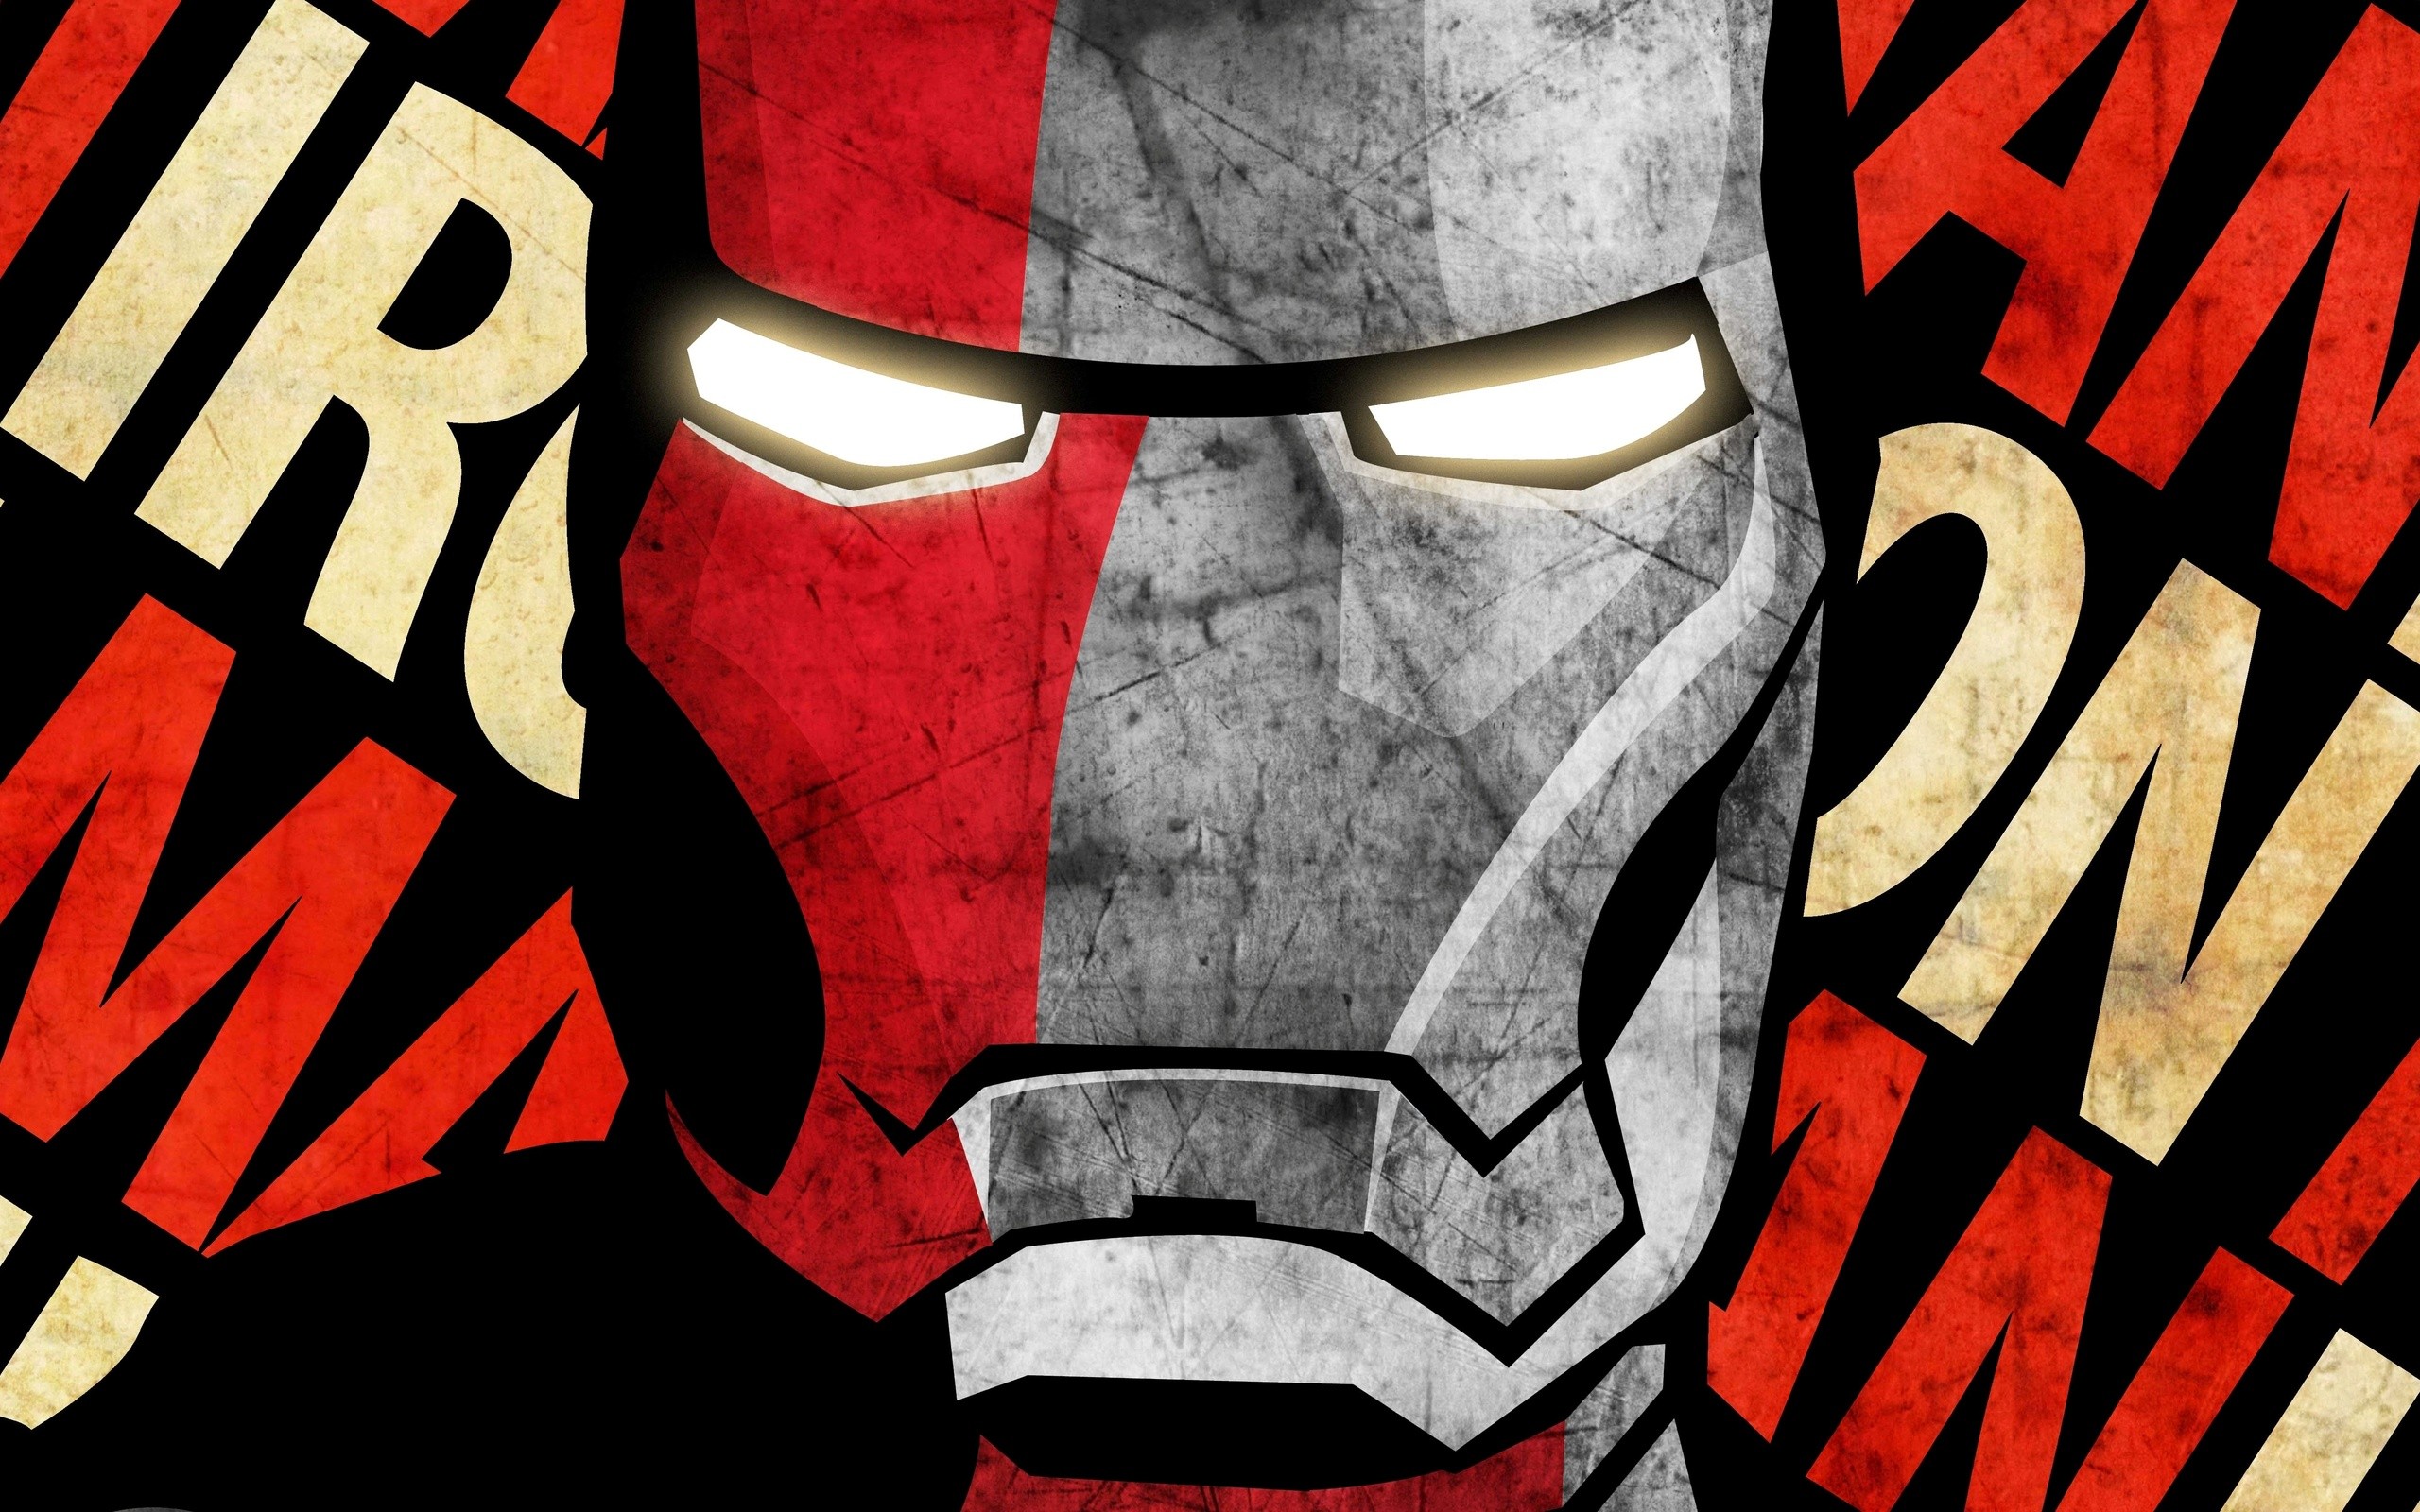 Iron Man Comic Face - wallpaper.